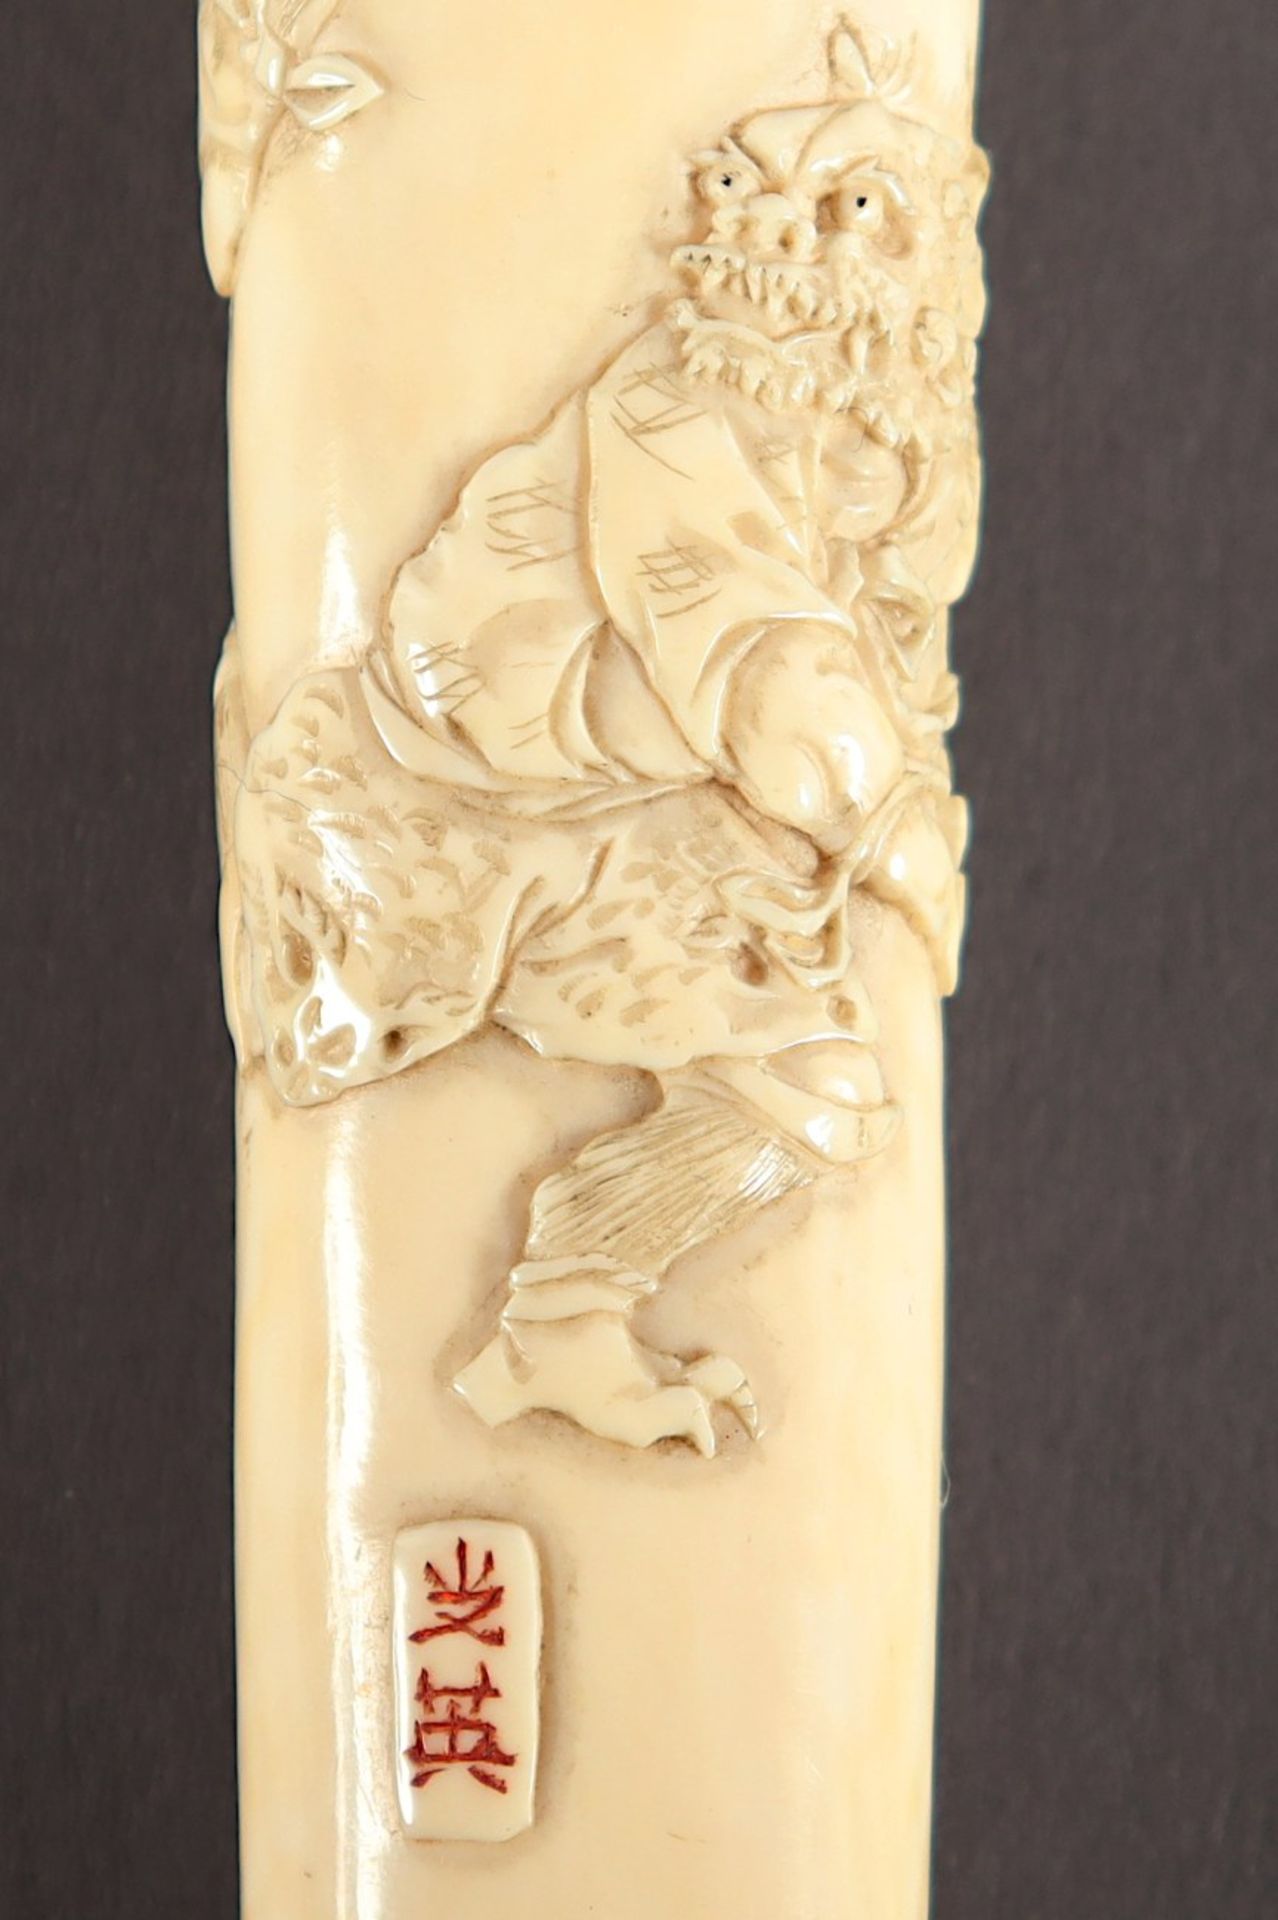 GRIFF, Elfenbein, im flachen Relief und geschwärzt graviert sehr fein geschnitzte Darstellung kämpf - Bild 3 aus 4